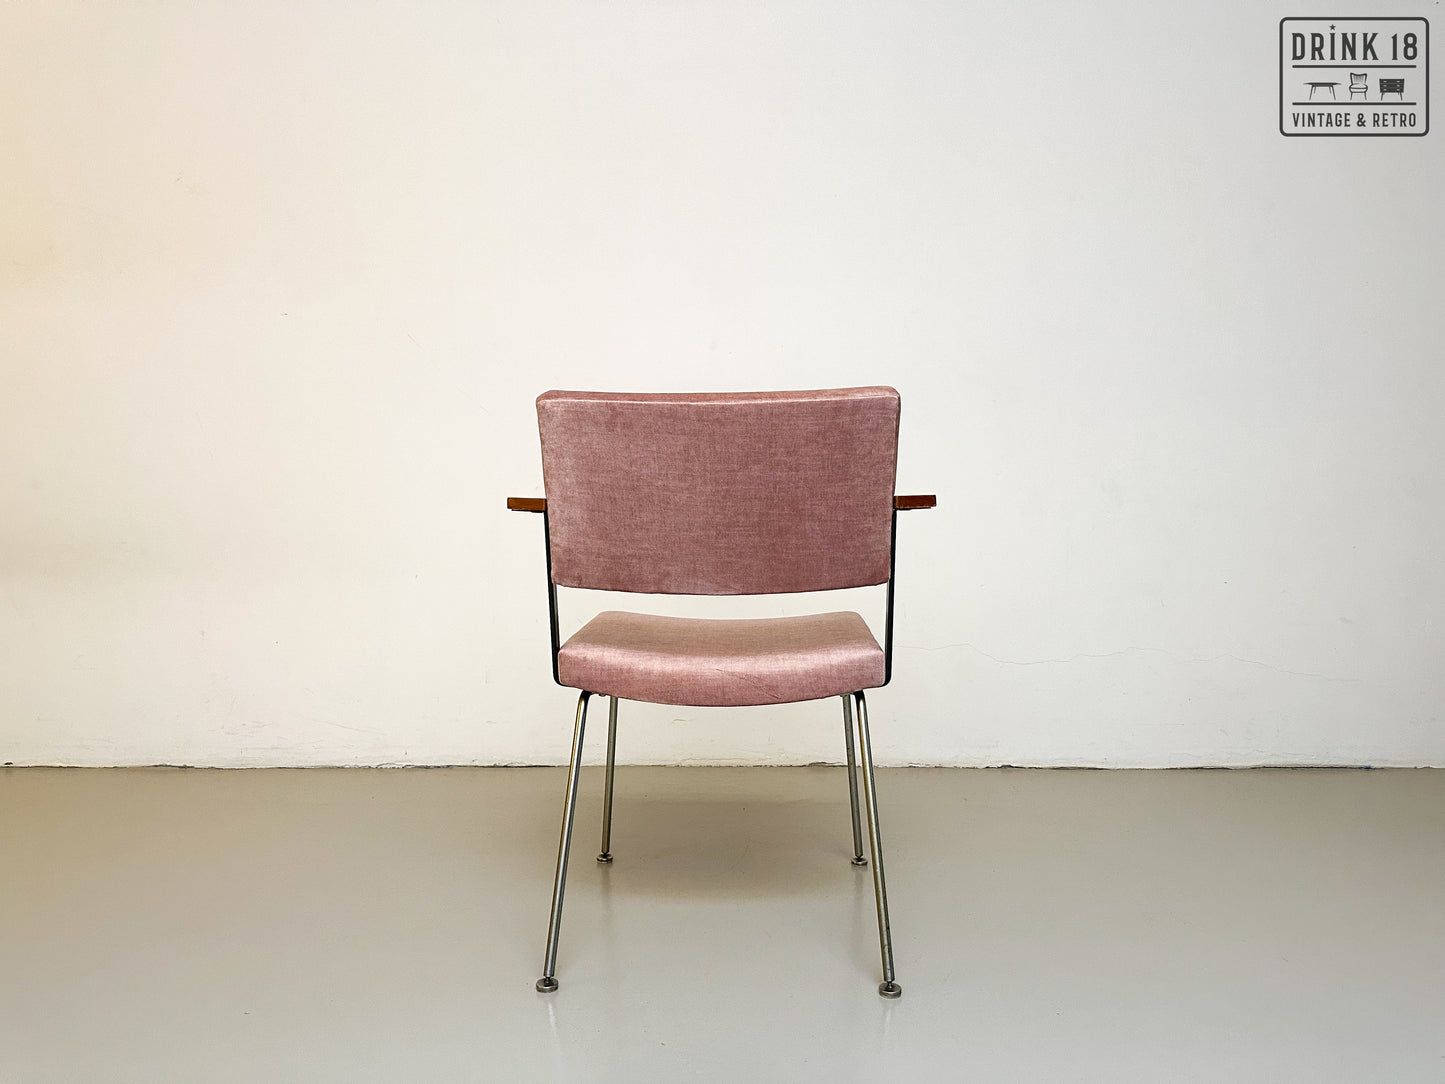 Vier model 1445 stoelen - Gispen (8 stuks beschikbaar)